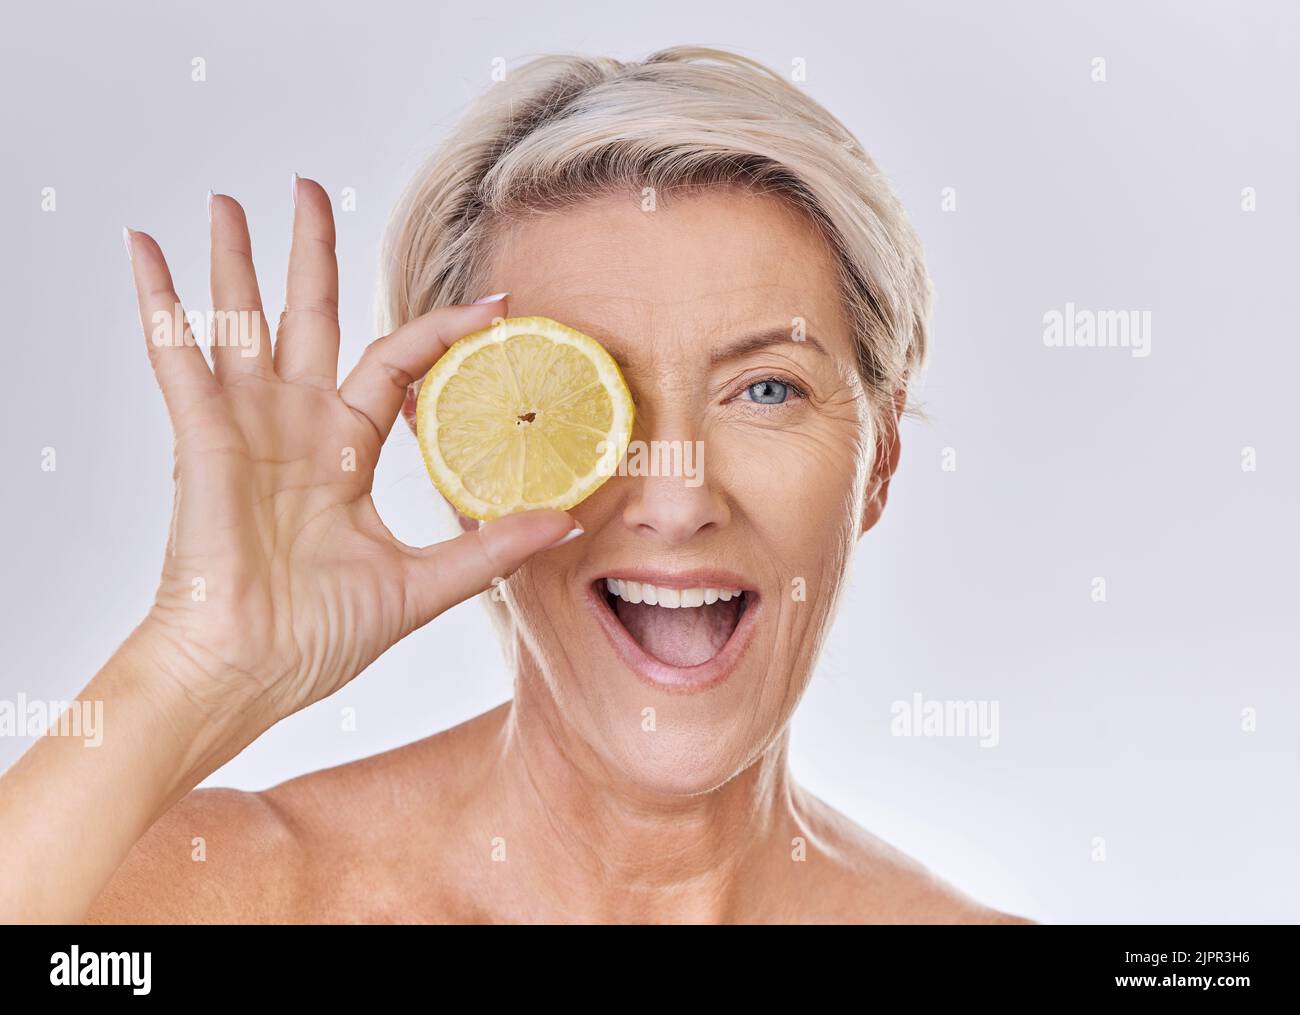 Hautpflege, Wellness und Gesicht der reifen Frau mit Falten halten Zitrone mit Ernährung, Vitaminen und Gesundheit. Porträt einer glücklichen älteren Dame mit Früchten Stockfoto